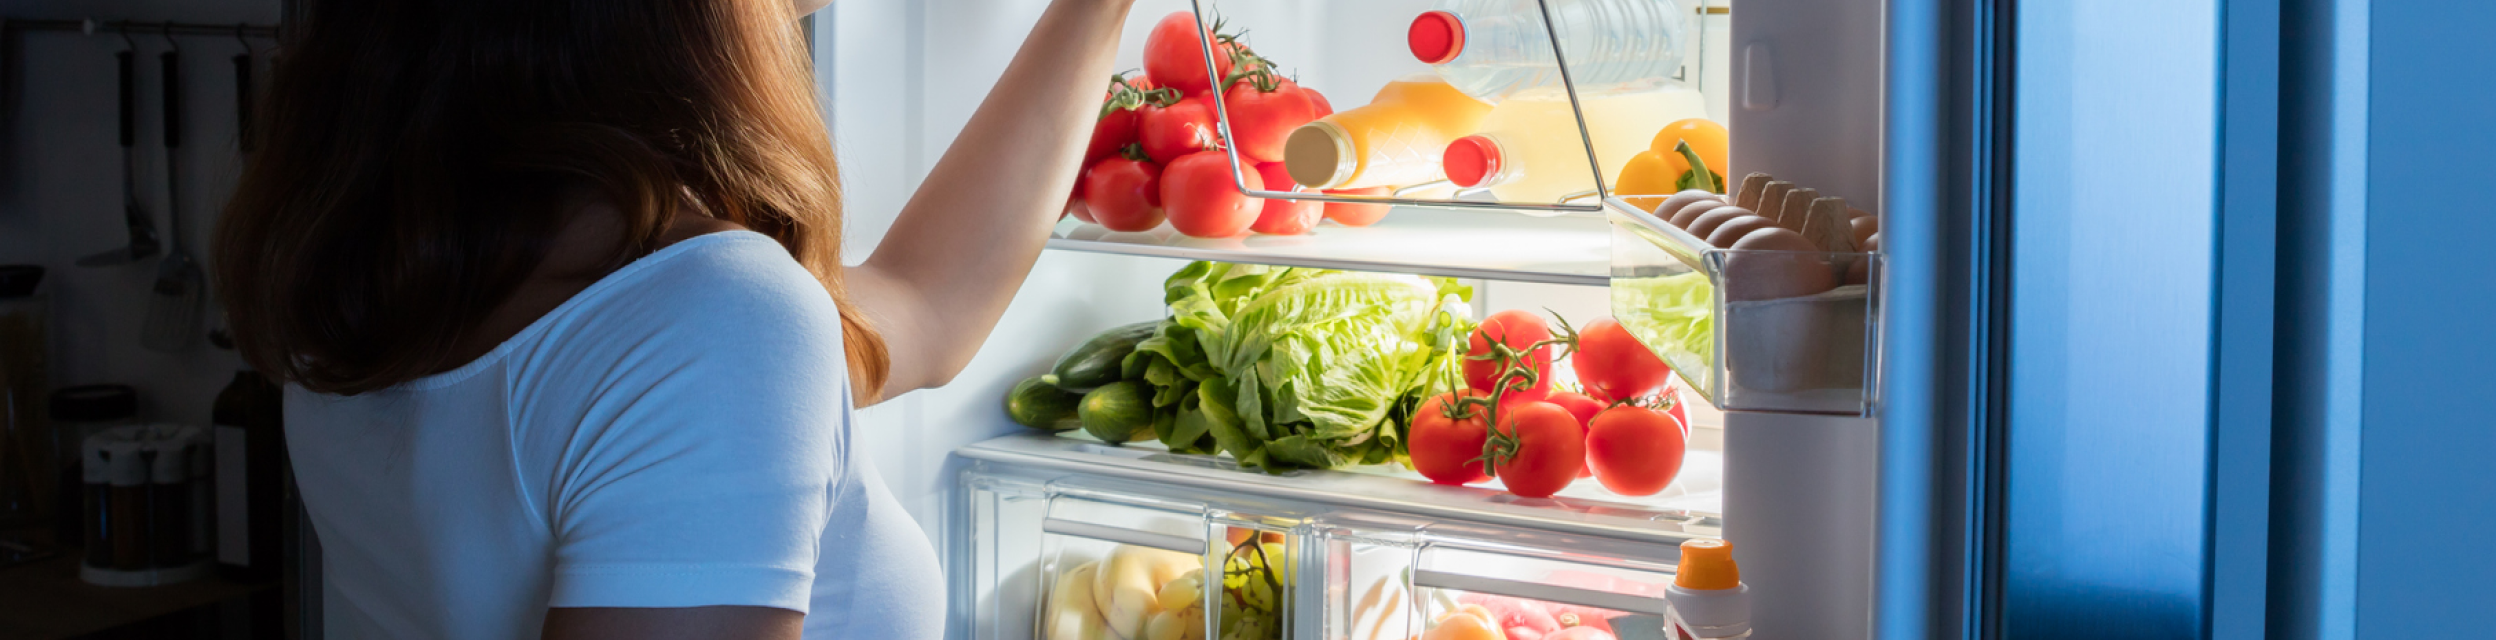 Por qué no es aconsejable poner imanes en el refrigerador - La Tercera